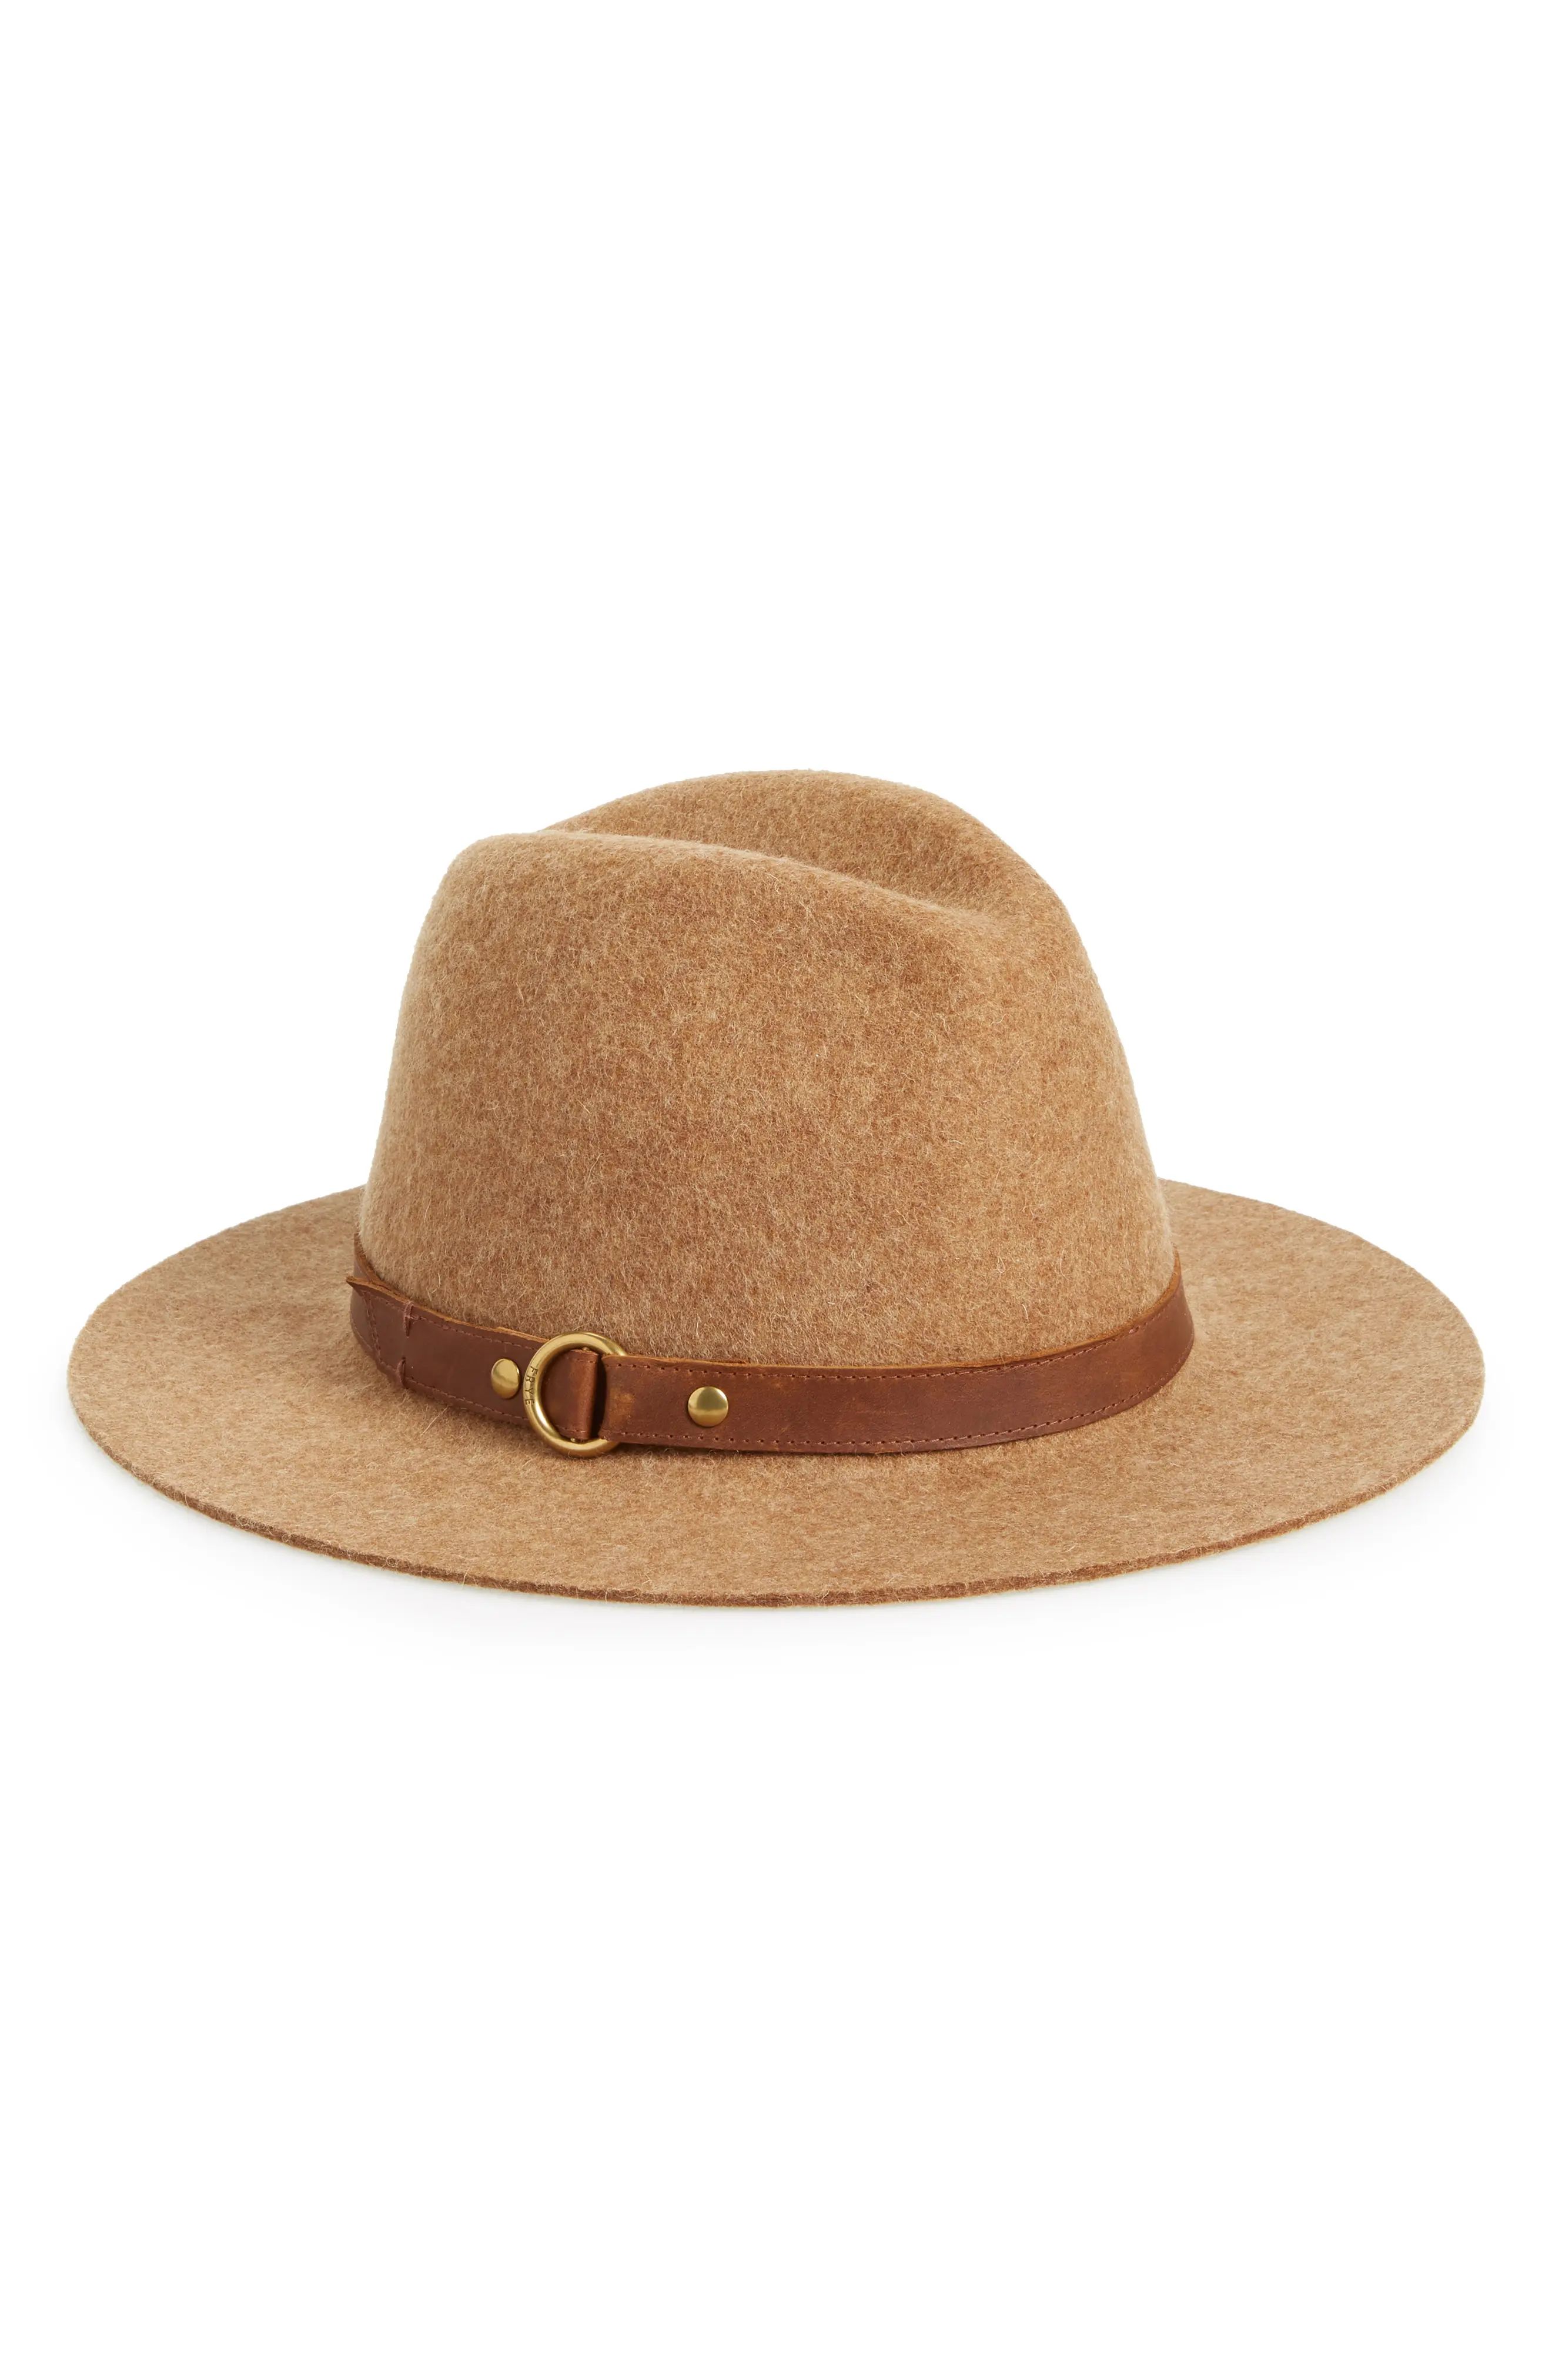 Frye Harness Wool Felt Panama Hat | Nordstrom